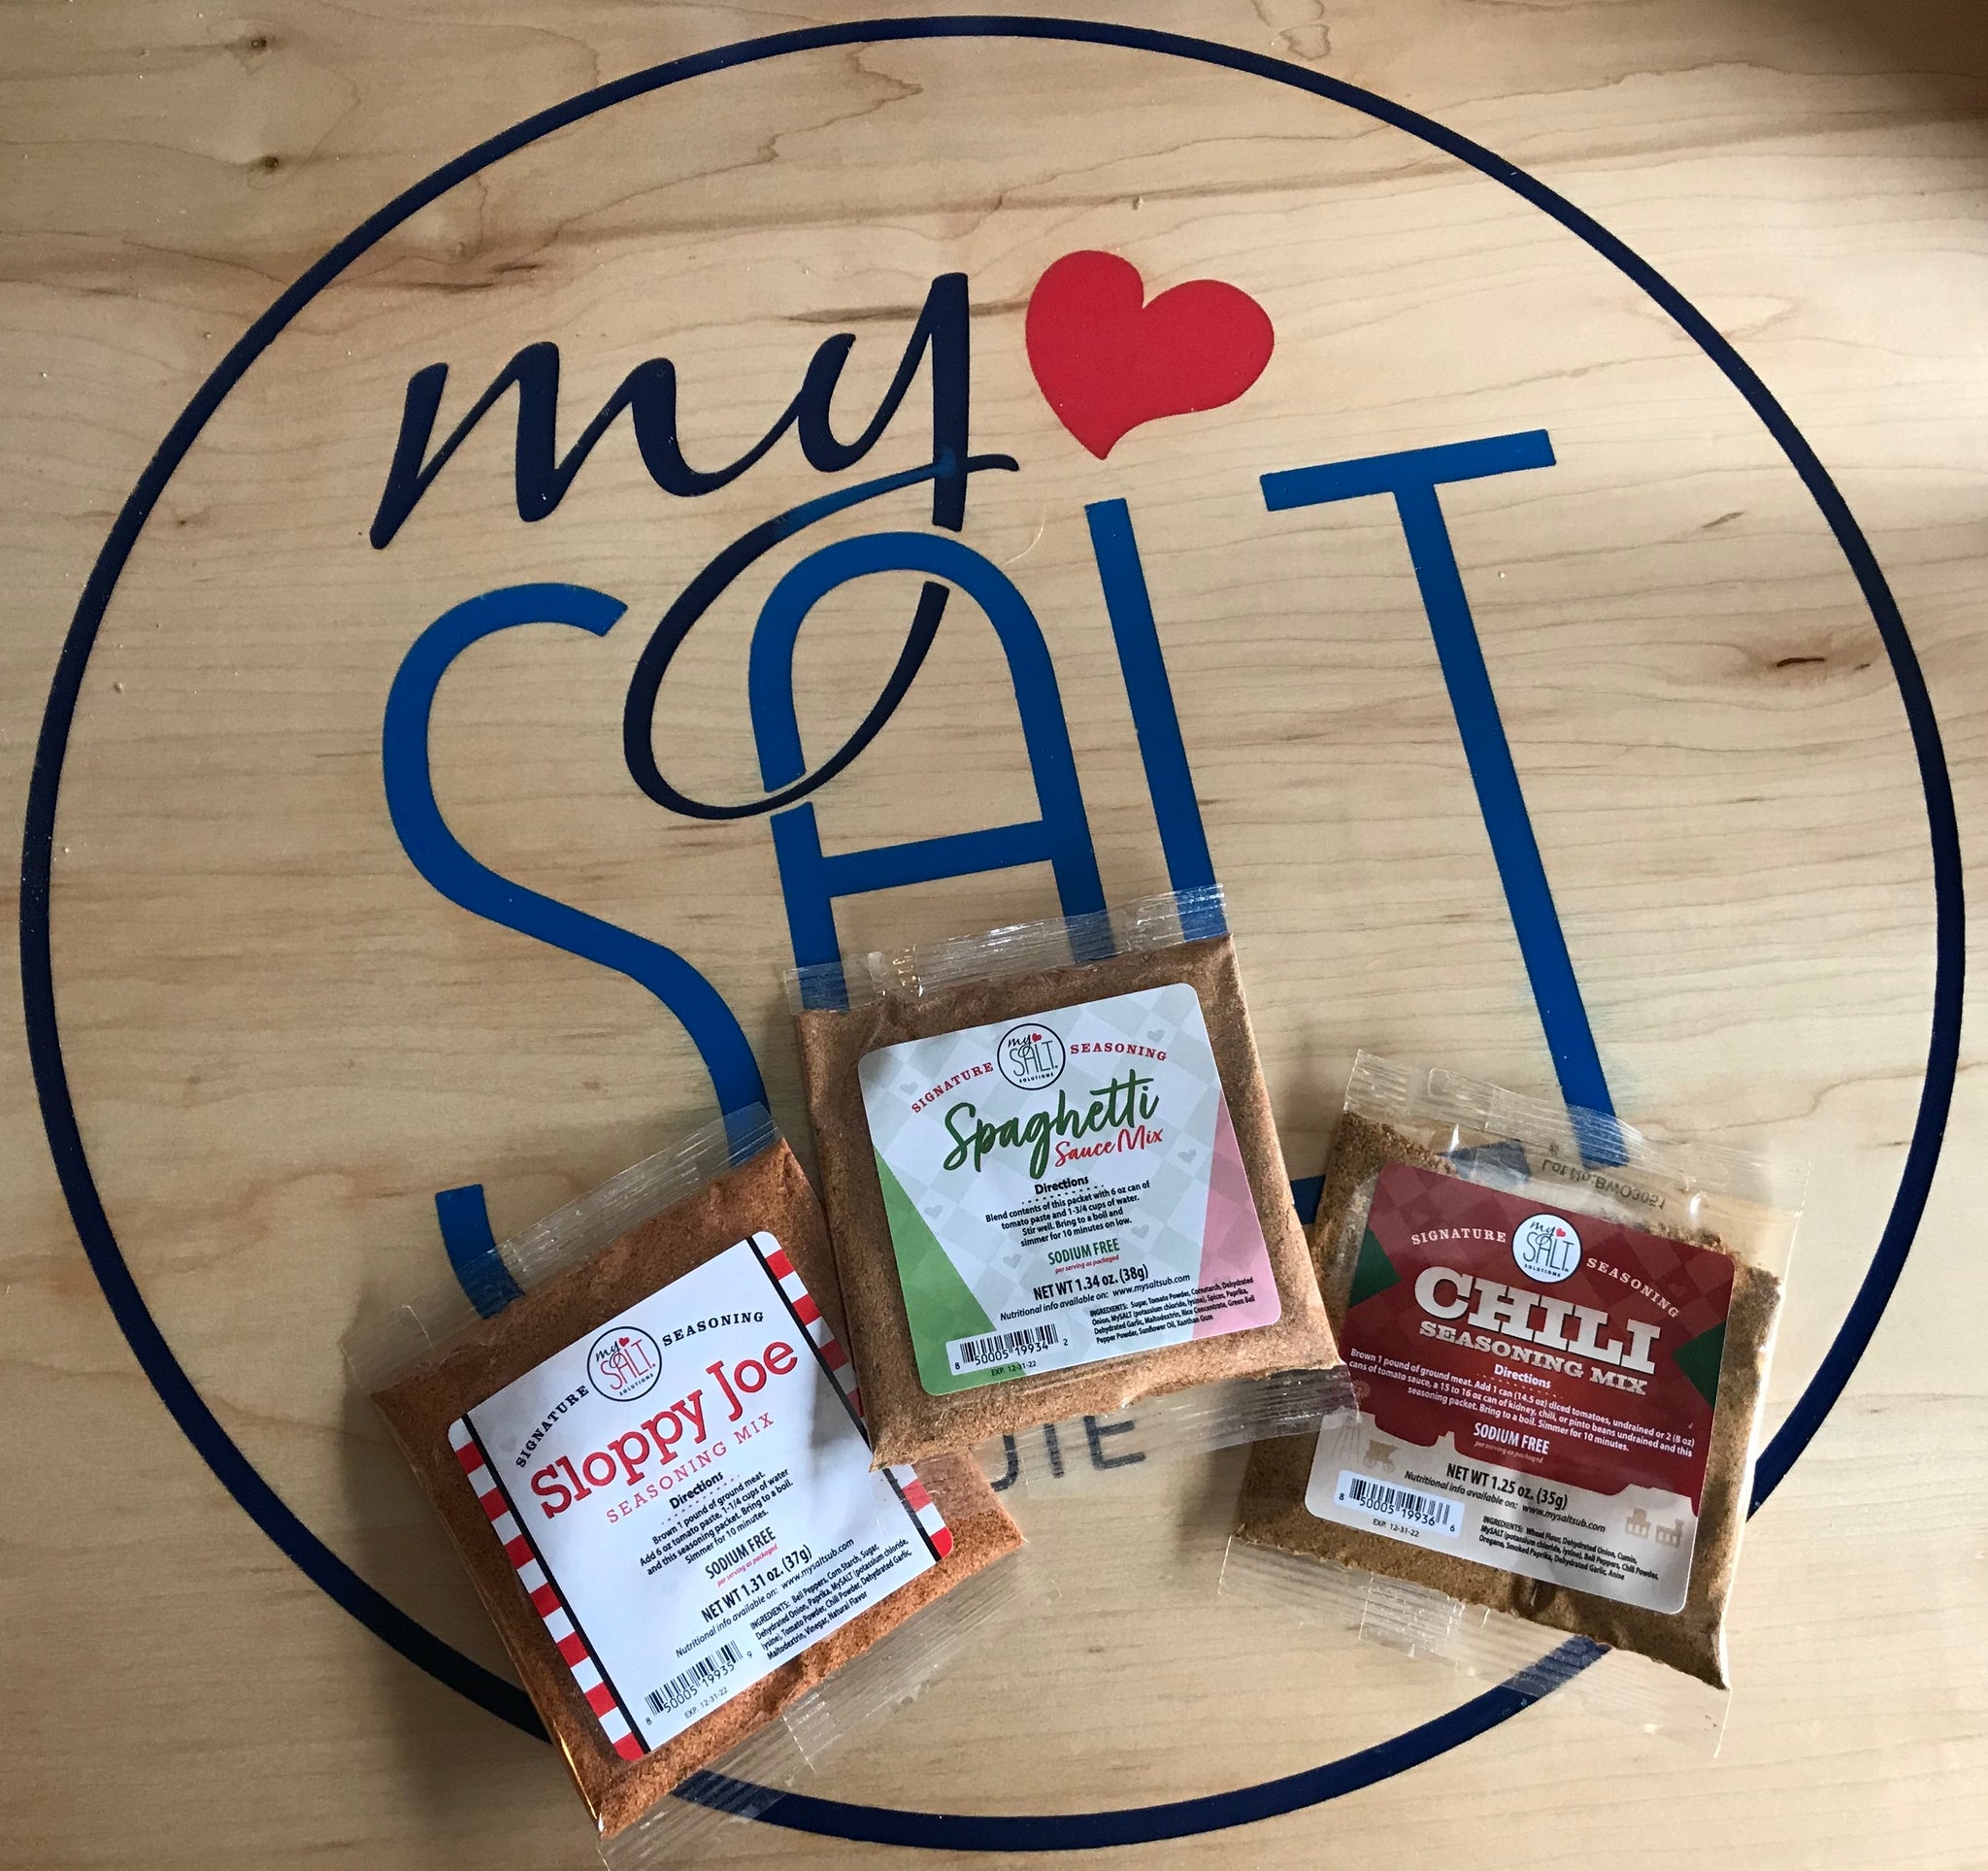 MySALT Blog – My Salt Substitute